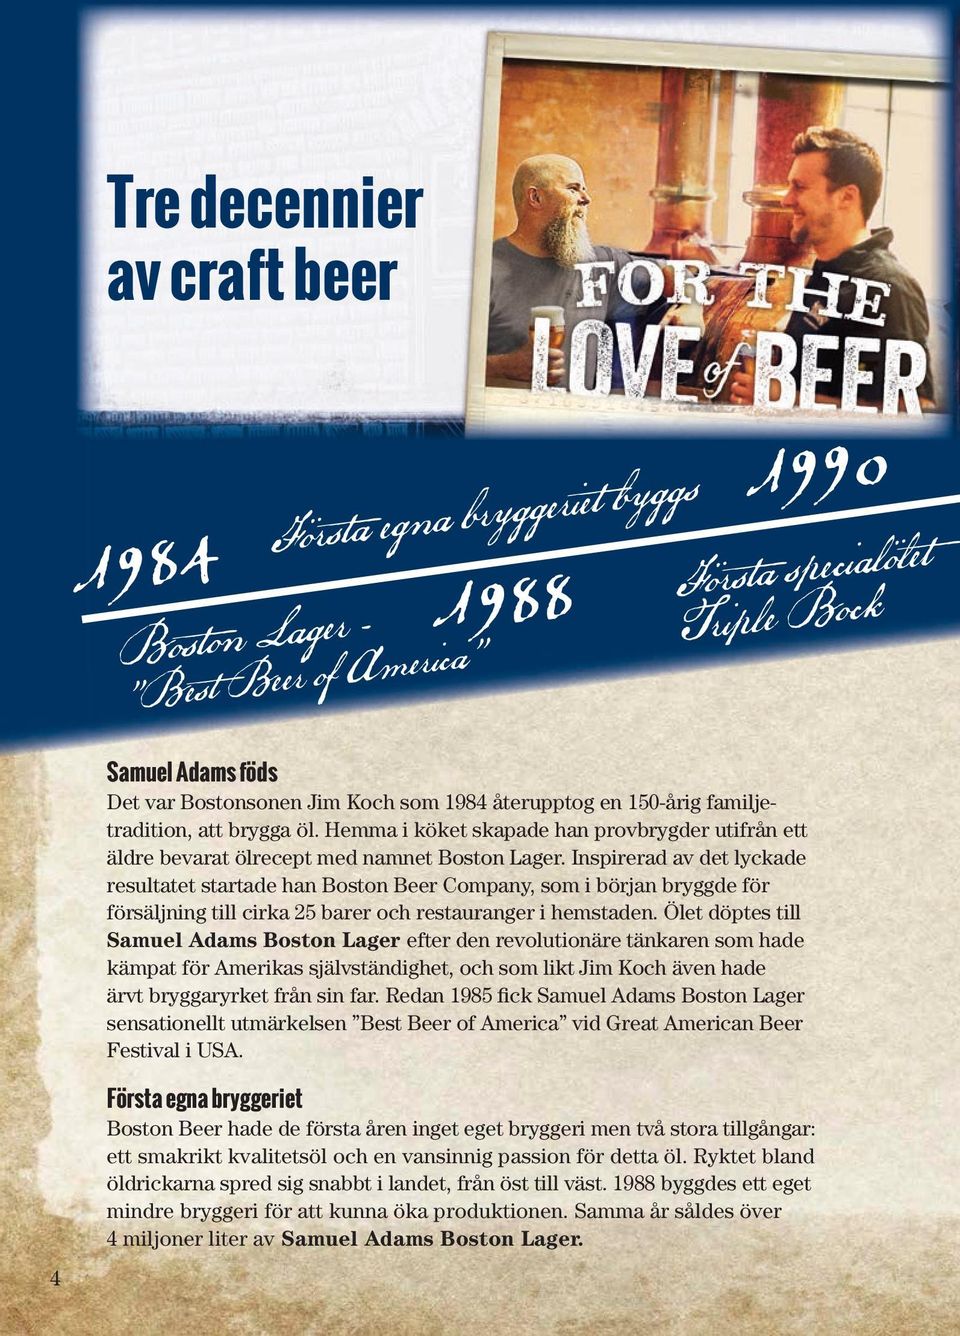 Inspirerad av det lyckade resultatet startade han Boston Beer Company, som i början bryggde för försäljning till cirka 25 barer och restauranger i hemstaden.